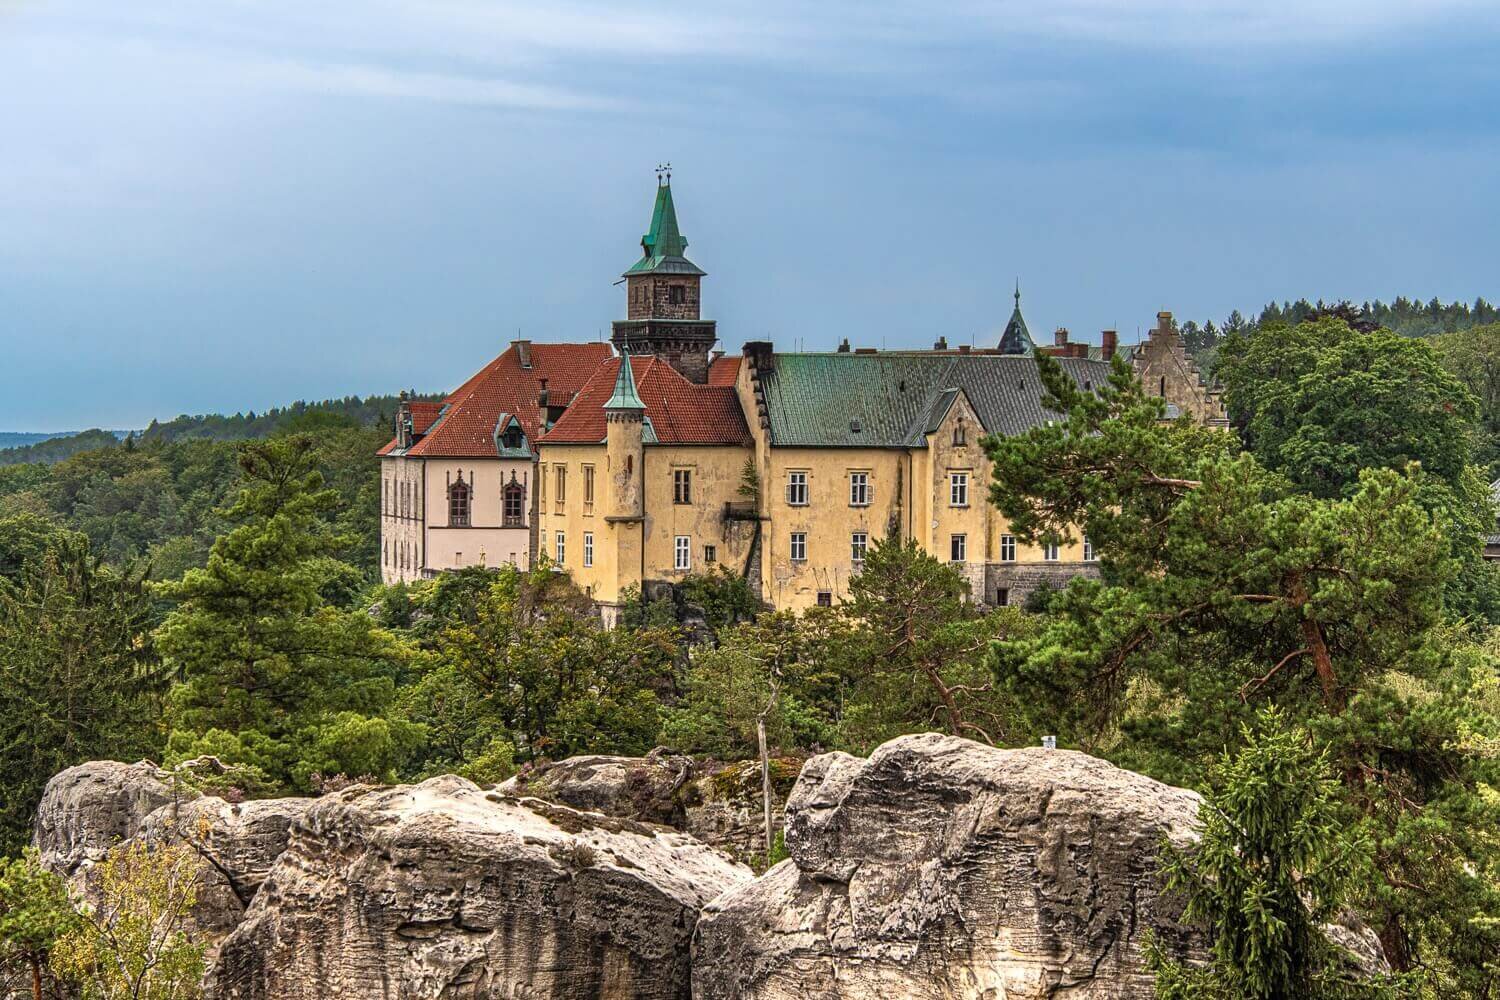 Cerca de Praga, en el Paraíso Bohemio, el castillo de Hruba Skala funciona como hotel. Castillos medievales en Europa. Turismo en Bohemia checa.